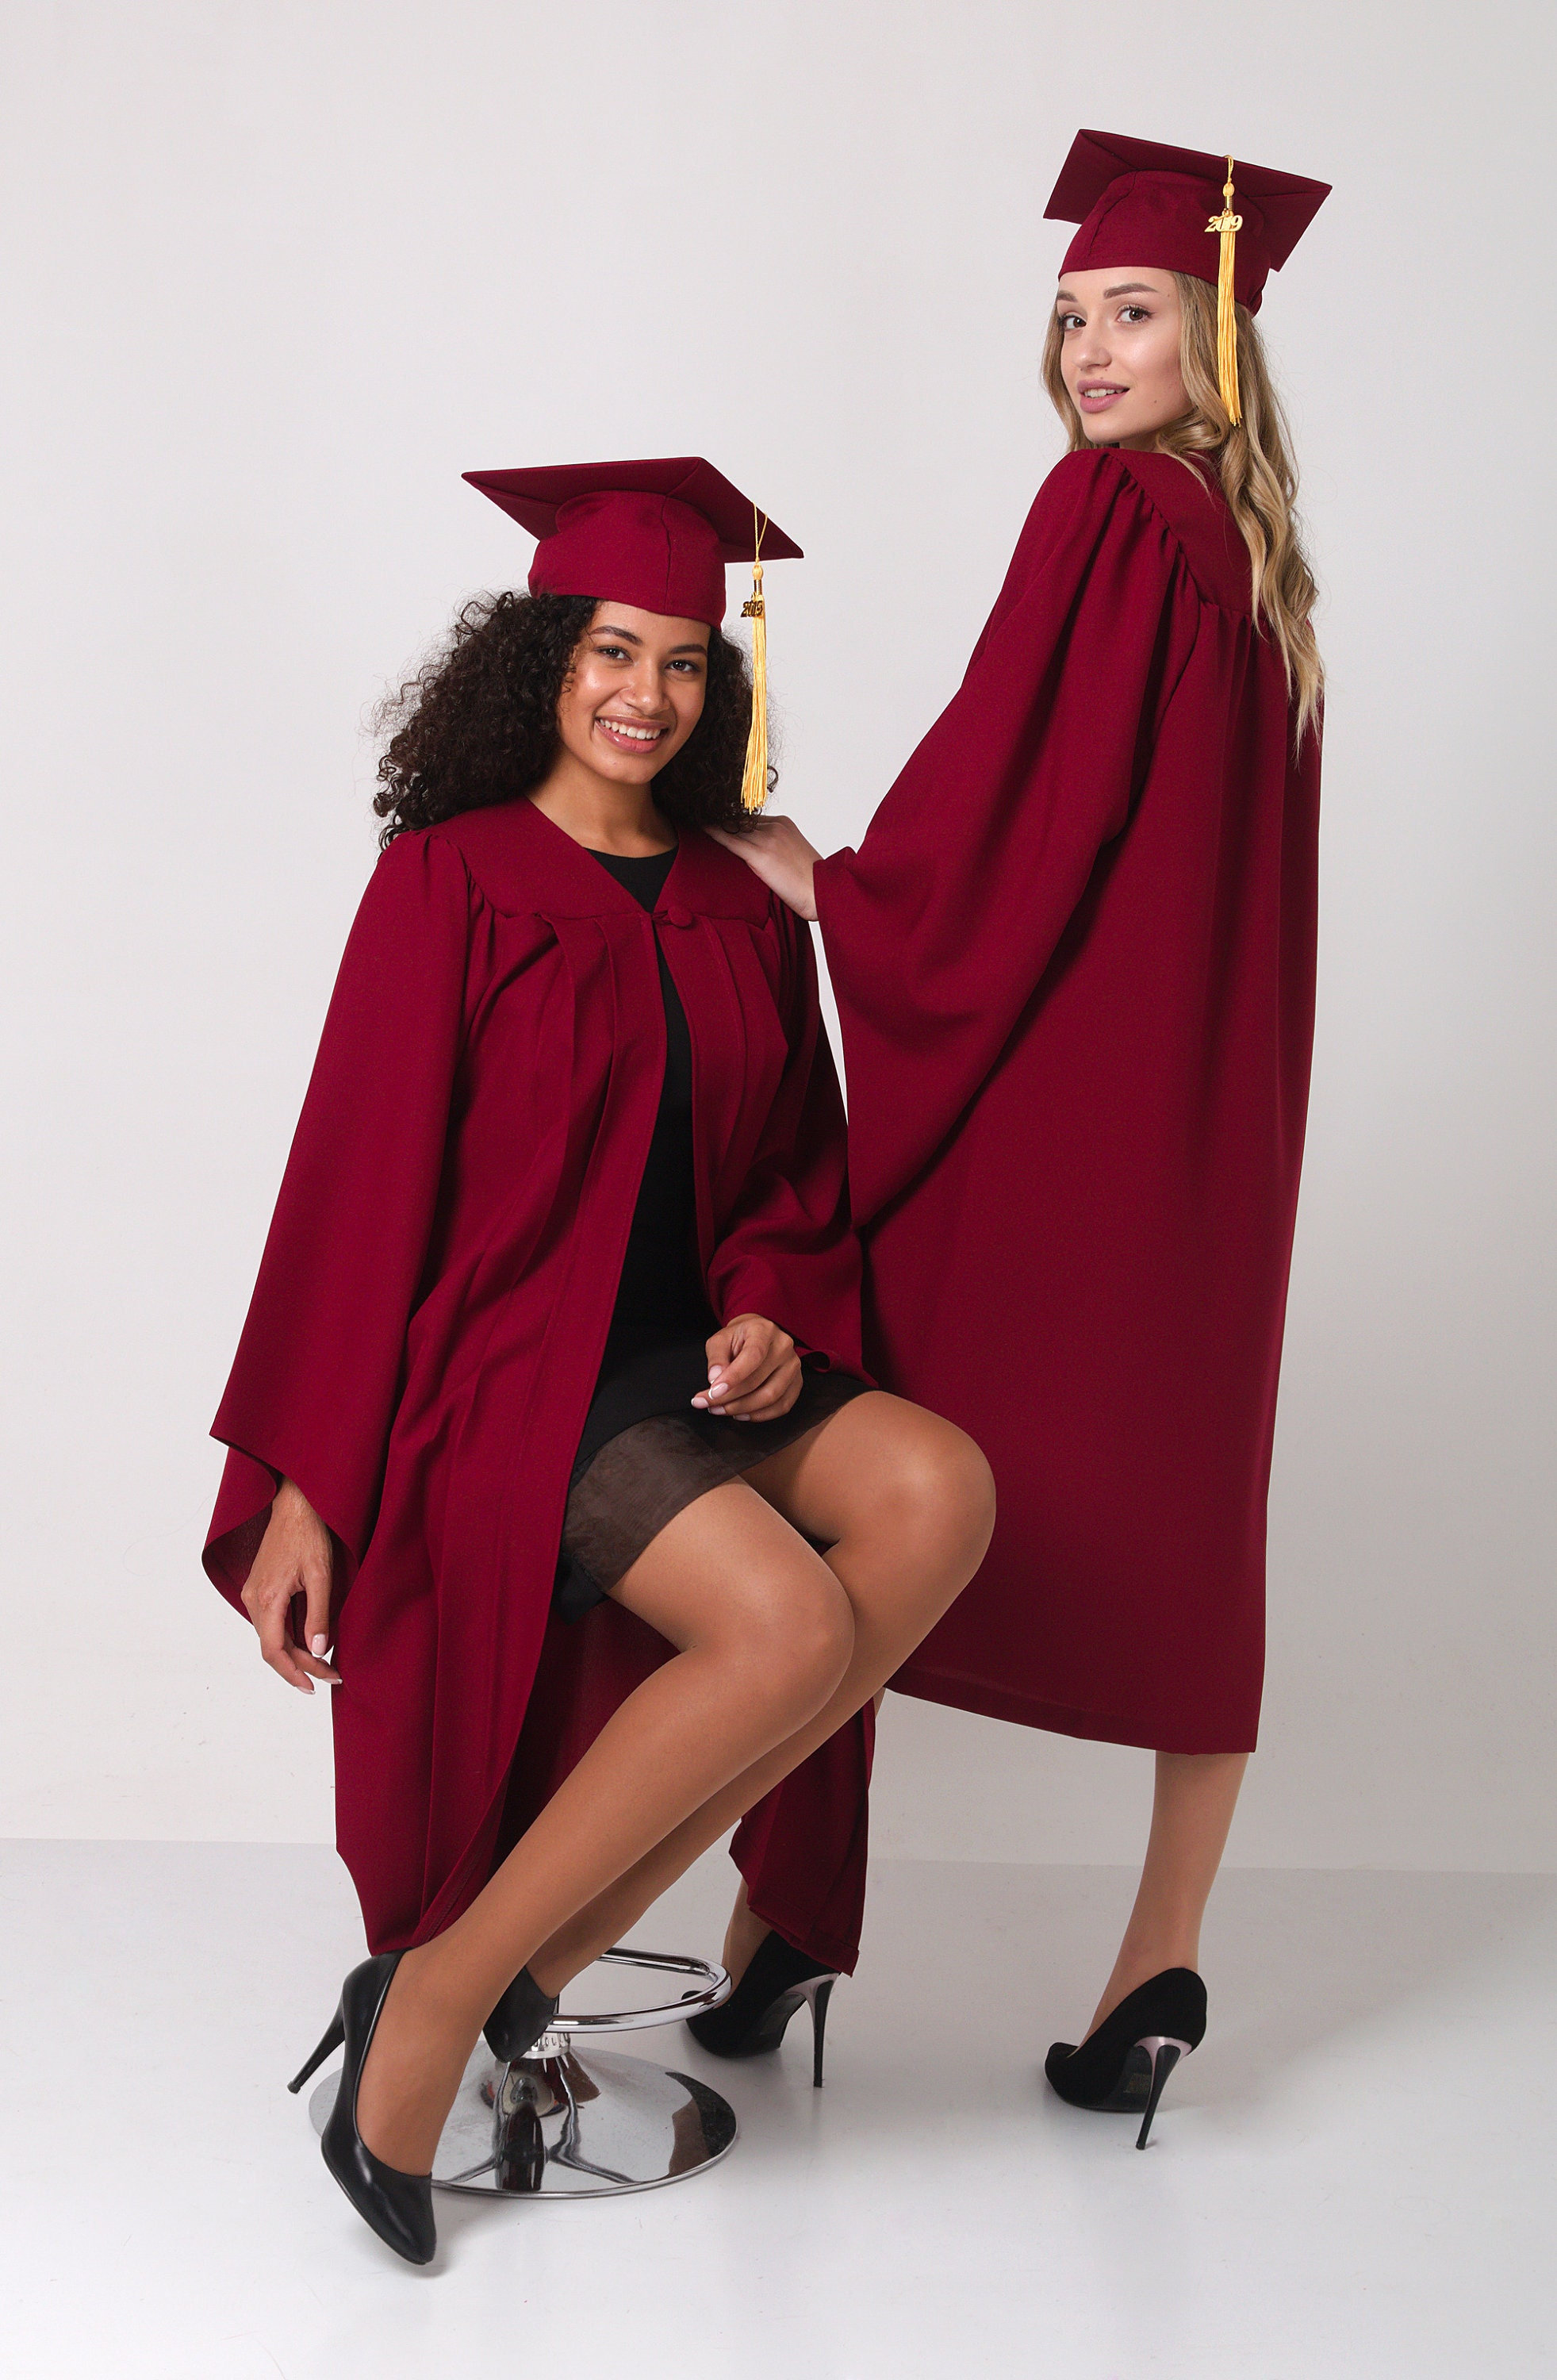 ACU Graduation Gown Set - Bachelor of Health Sciences | University Graduation  Gown Set